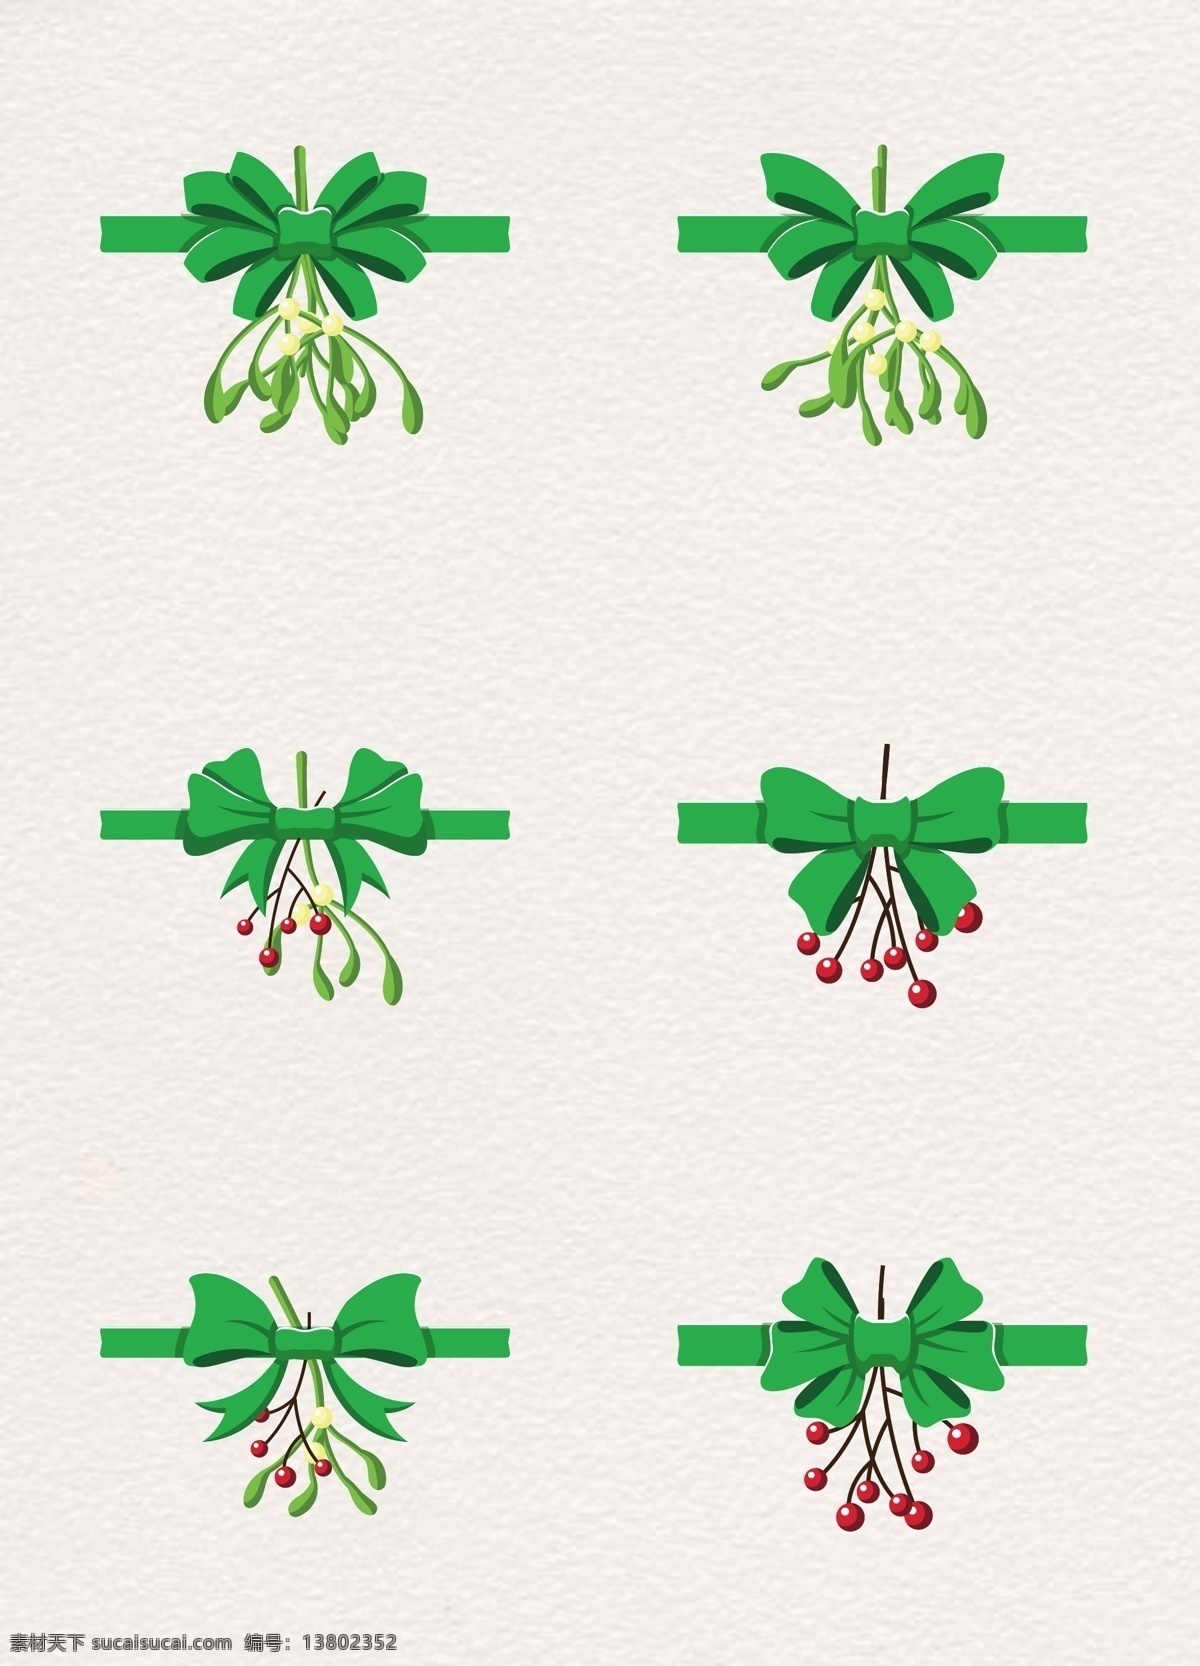 绿色 圣诞 植物 蝴蝶结 矢量 圣诞节 丝带 矢量图 槲寄生 冬青 卡通